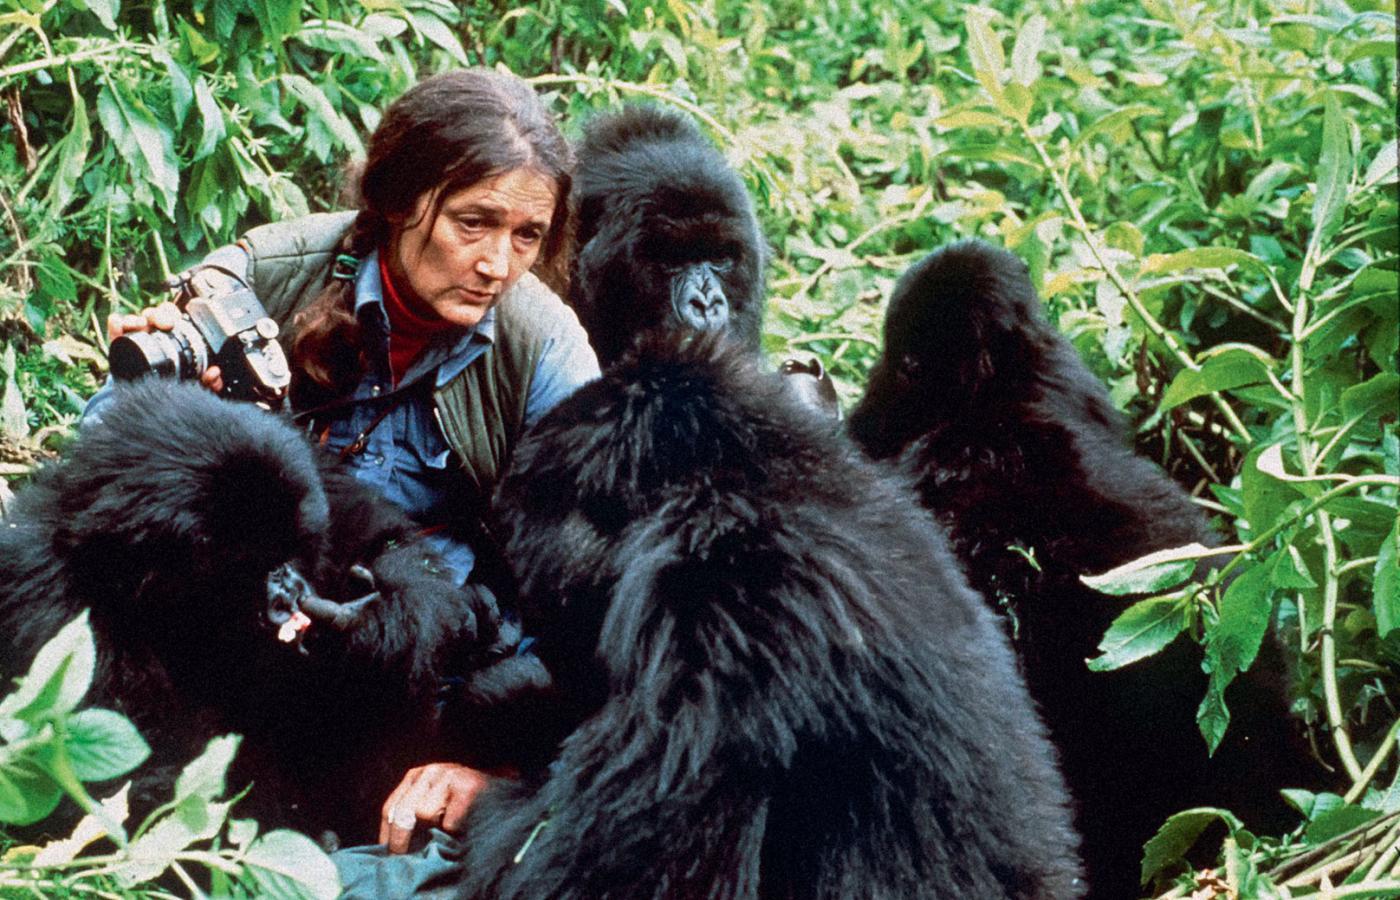 Dian Fossey, etolog, która przebywając przez kilkanaście lat w naturalnym środowisku goryli górskich, odkryła, że maja one wiele cech wspólnych z ludźmi.